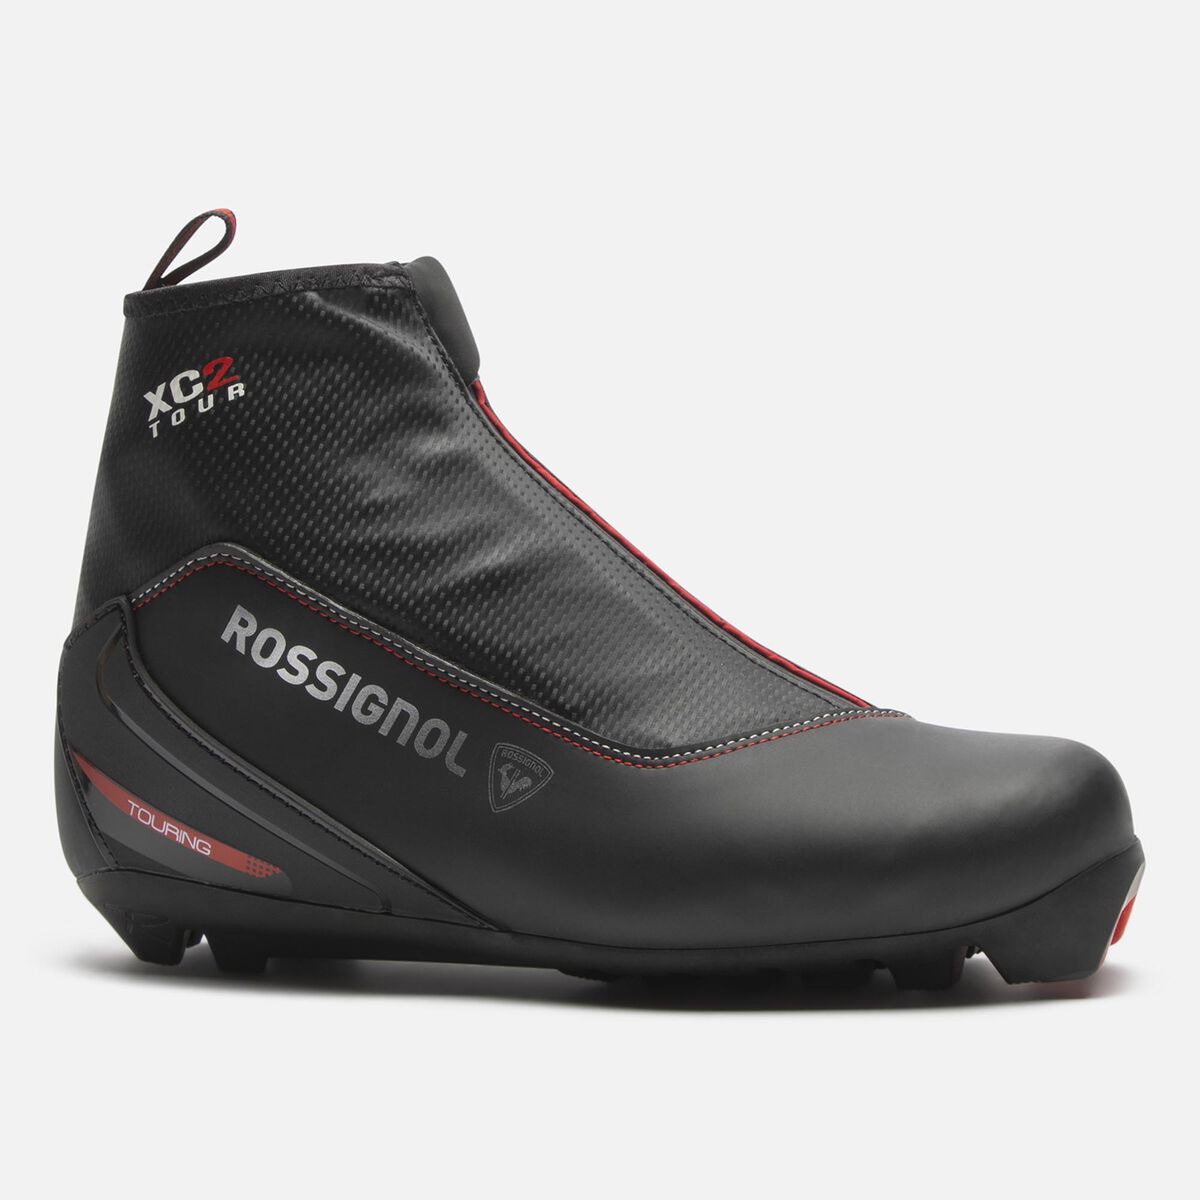 Rossignol Chaussures de ski nordique touring Unisexee XC-2 Multicolor